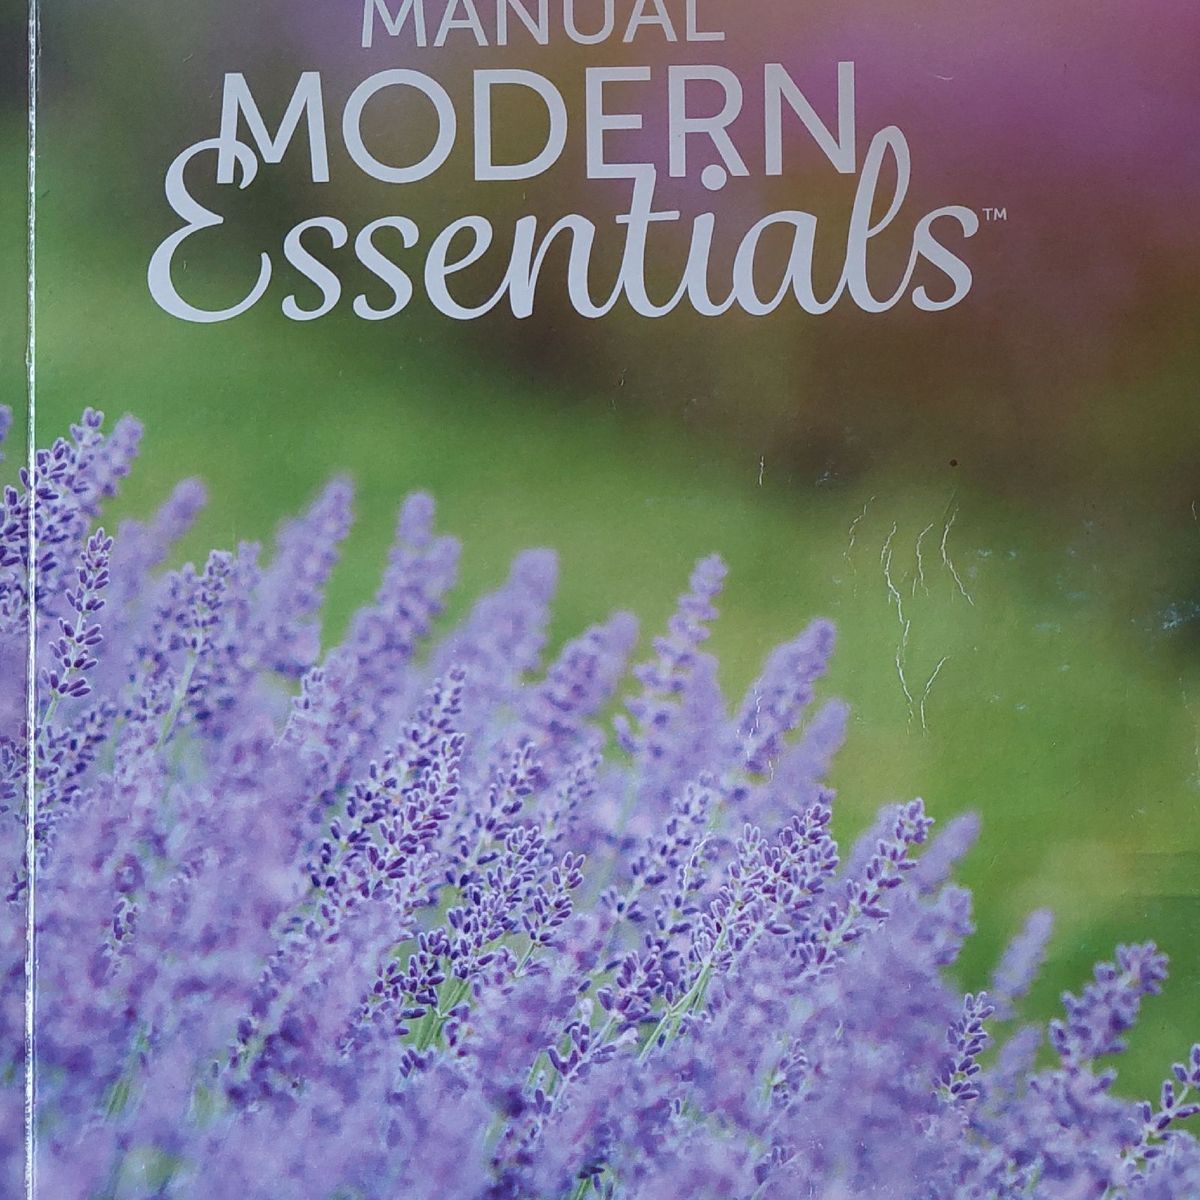 Aromatizandobrasil - O manual Modern Essentials está em estoque! Entrem no  site online para obter seu livro! Sabemos que muitos estão esperando há  muito tempo para ter accesso ao livro. Como parceiros